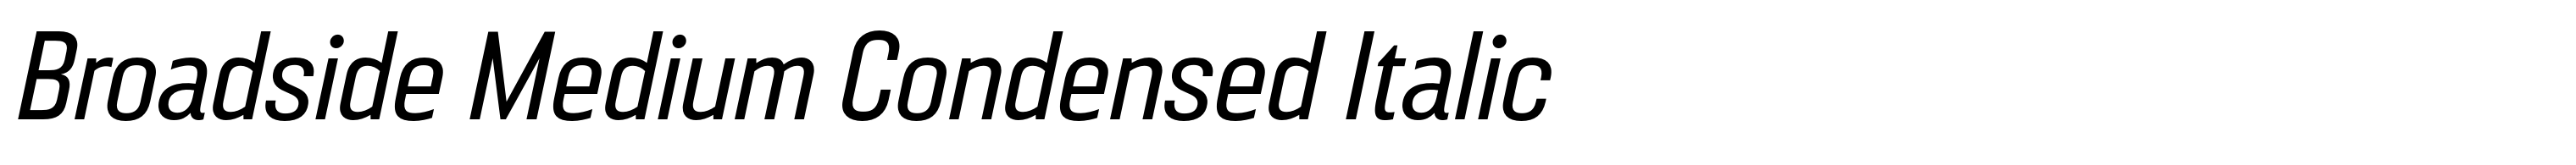 Broadside Medium Condensed Italic